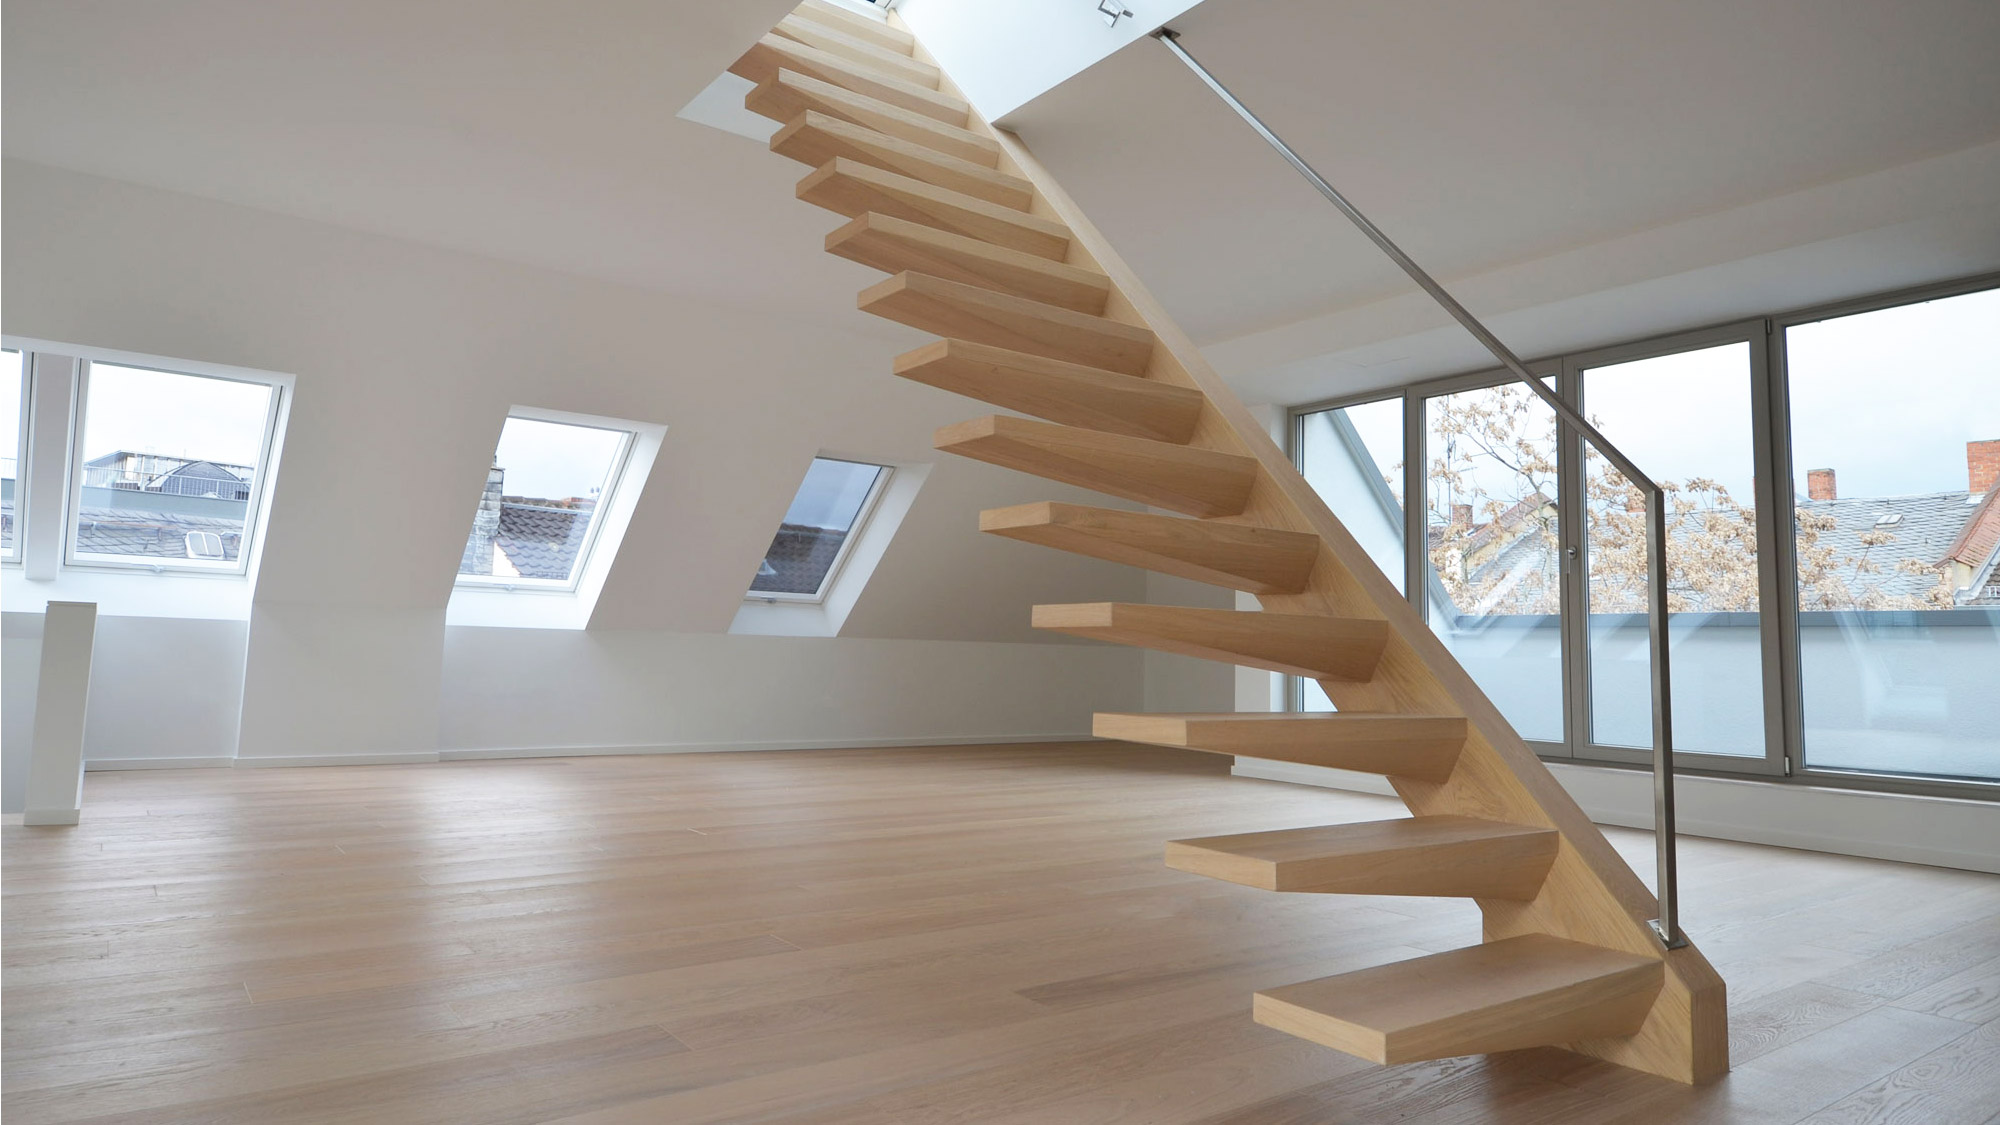 Treppenbau Diehl: Freistehende Kragarmtreppe mit Edelstahlhandlauf